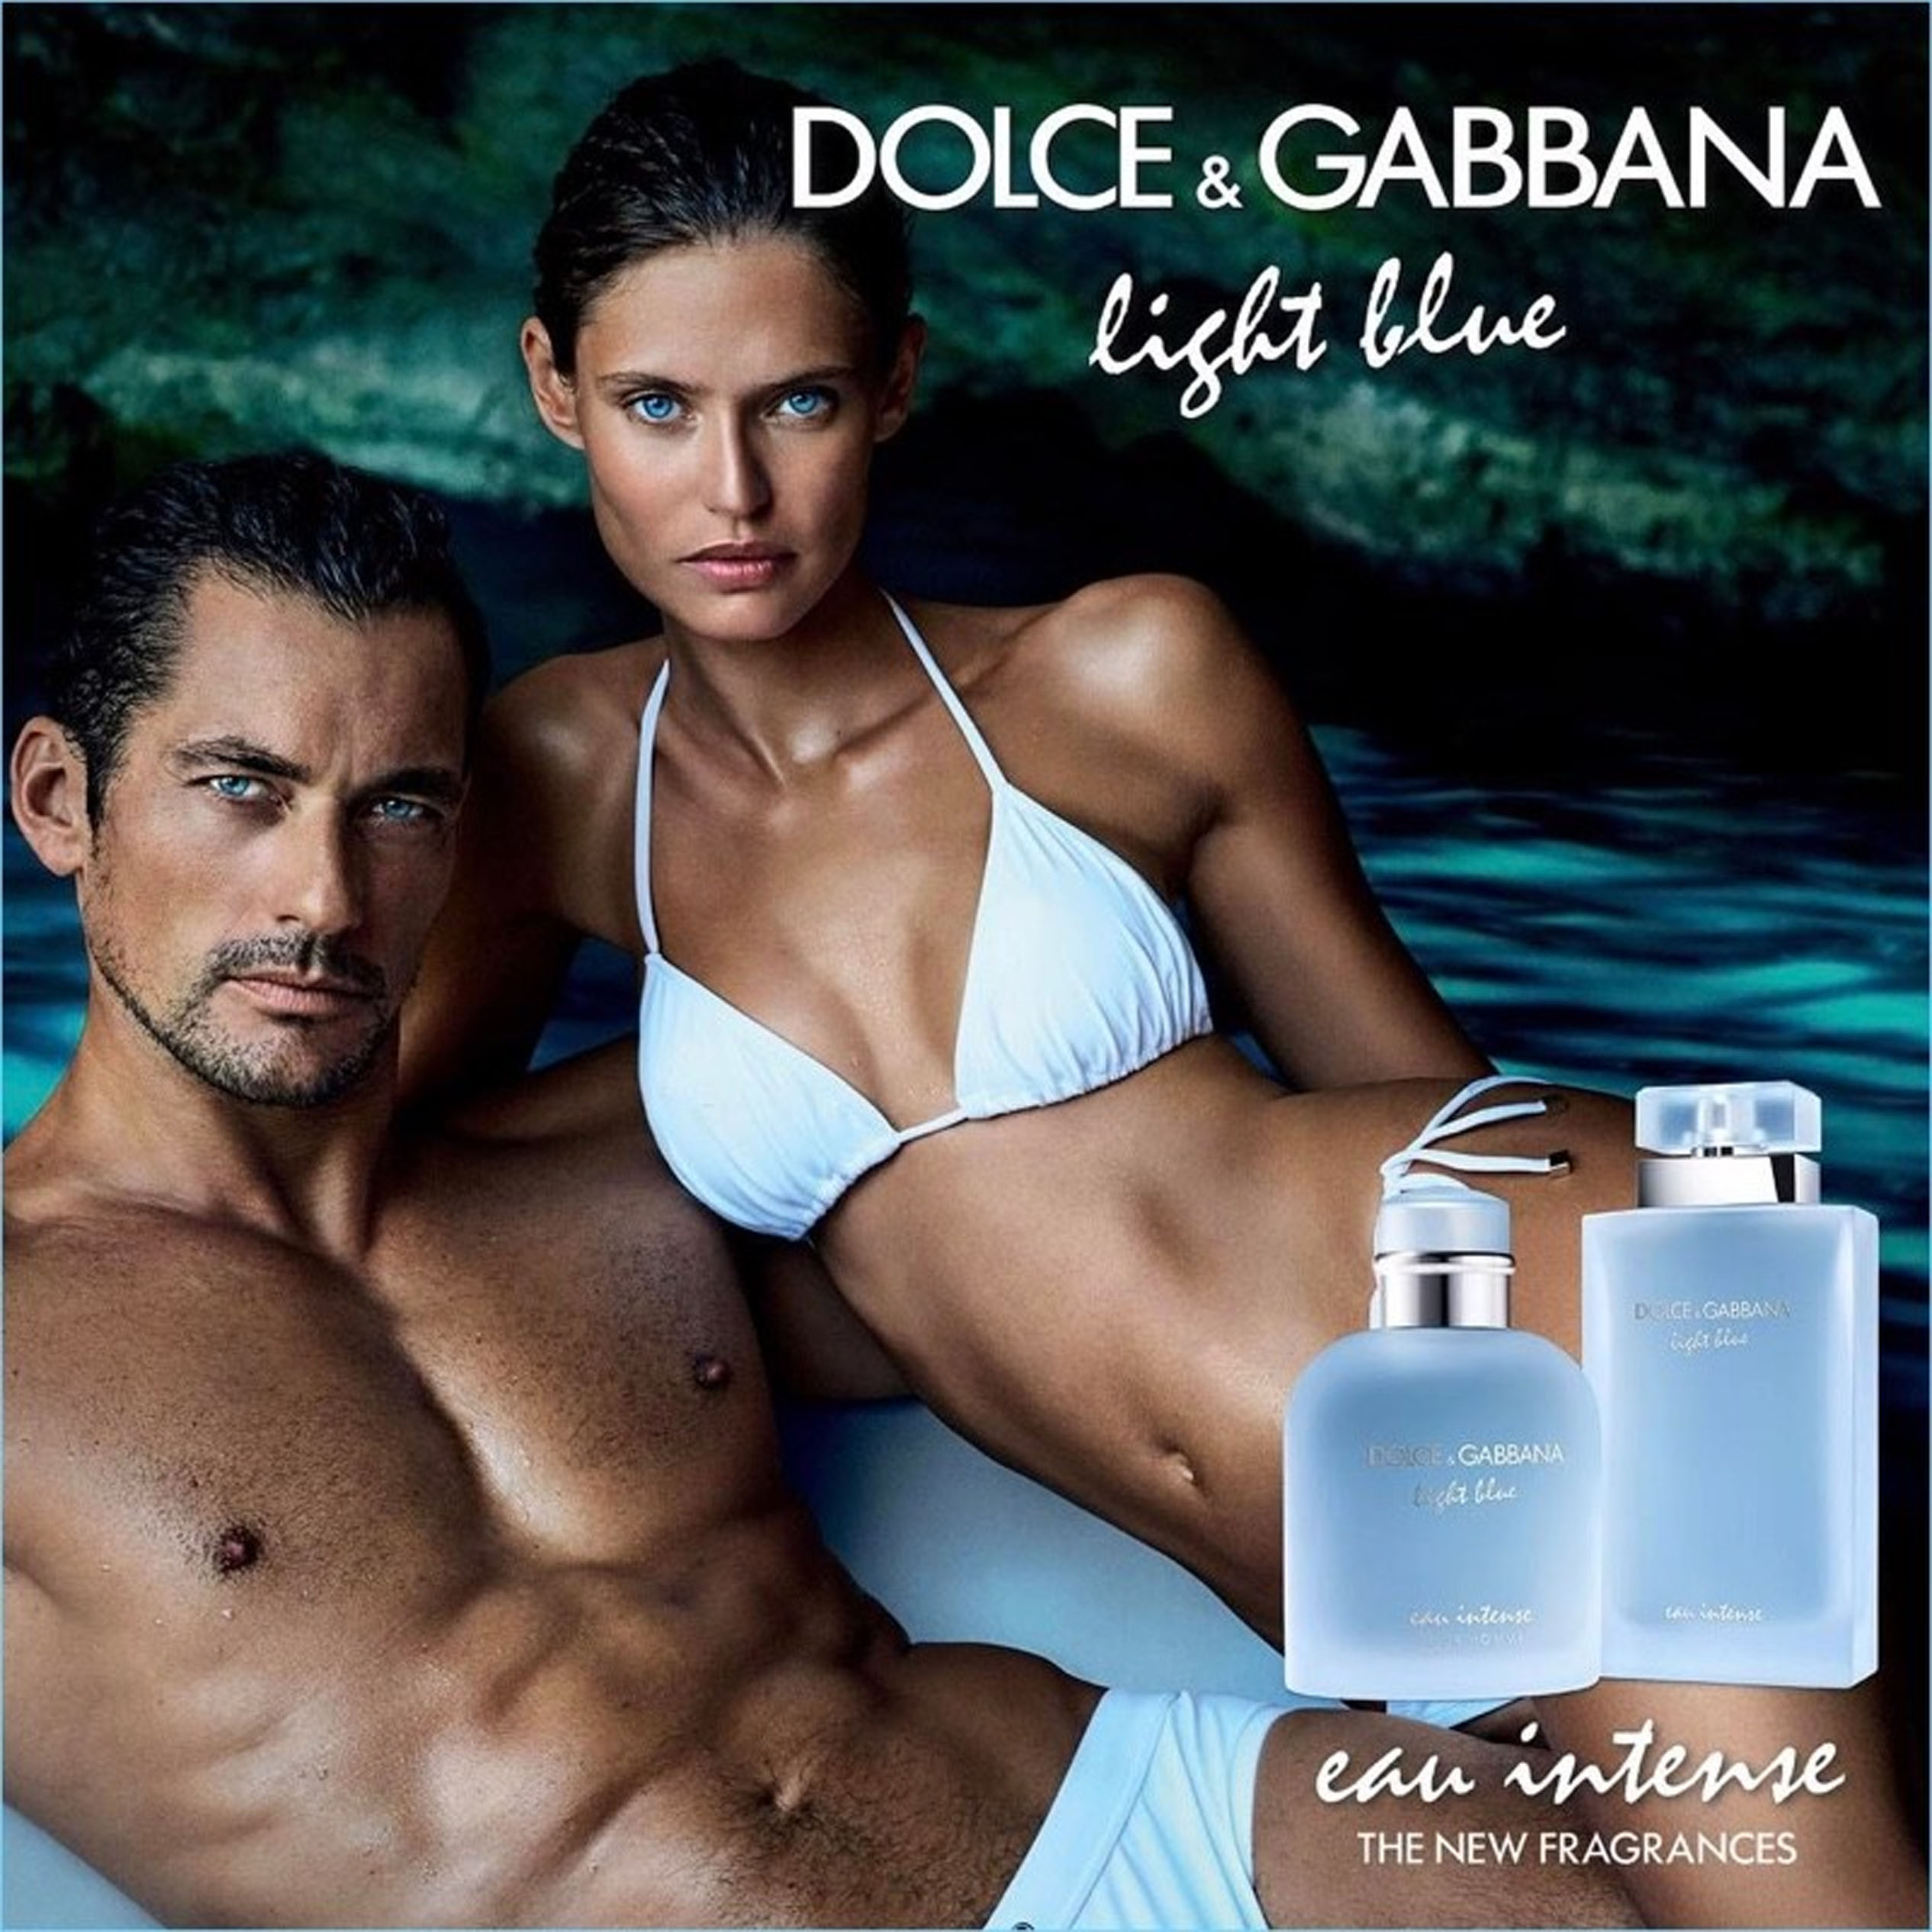 Perfume Light Blue Eau Intense Pour Homme Dolce & Gabbana  (Replica Con Fragancia Importada)- Hombre